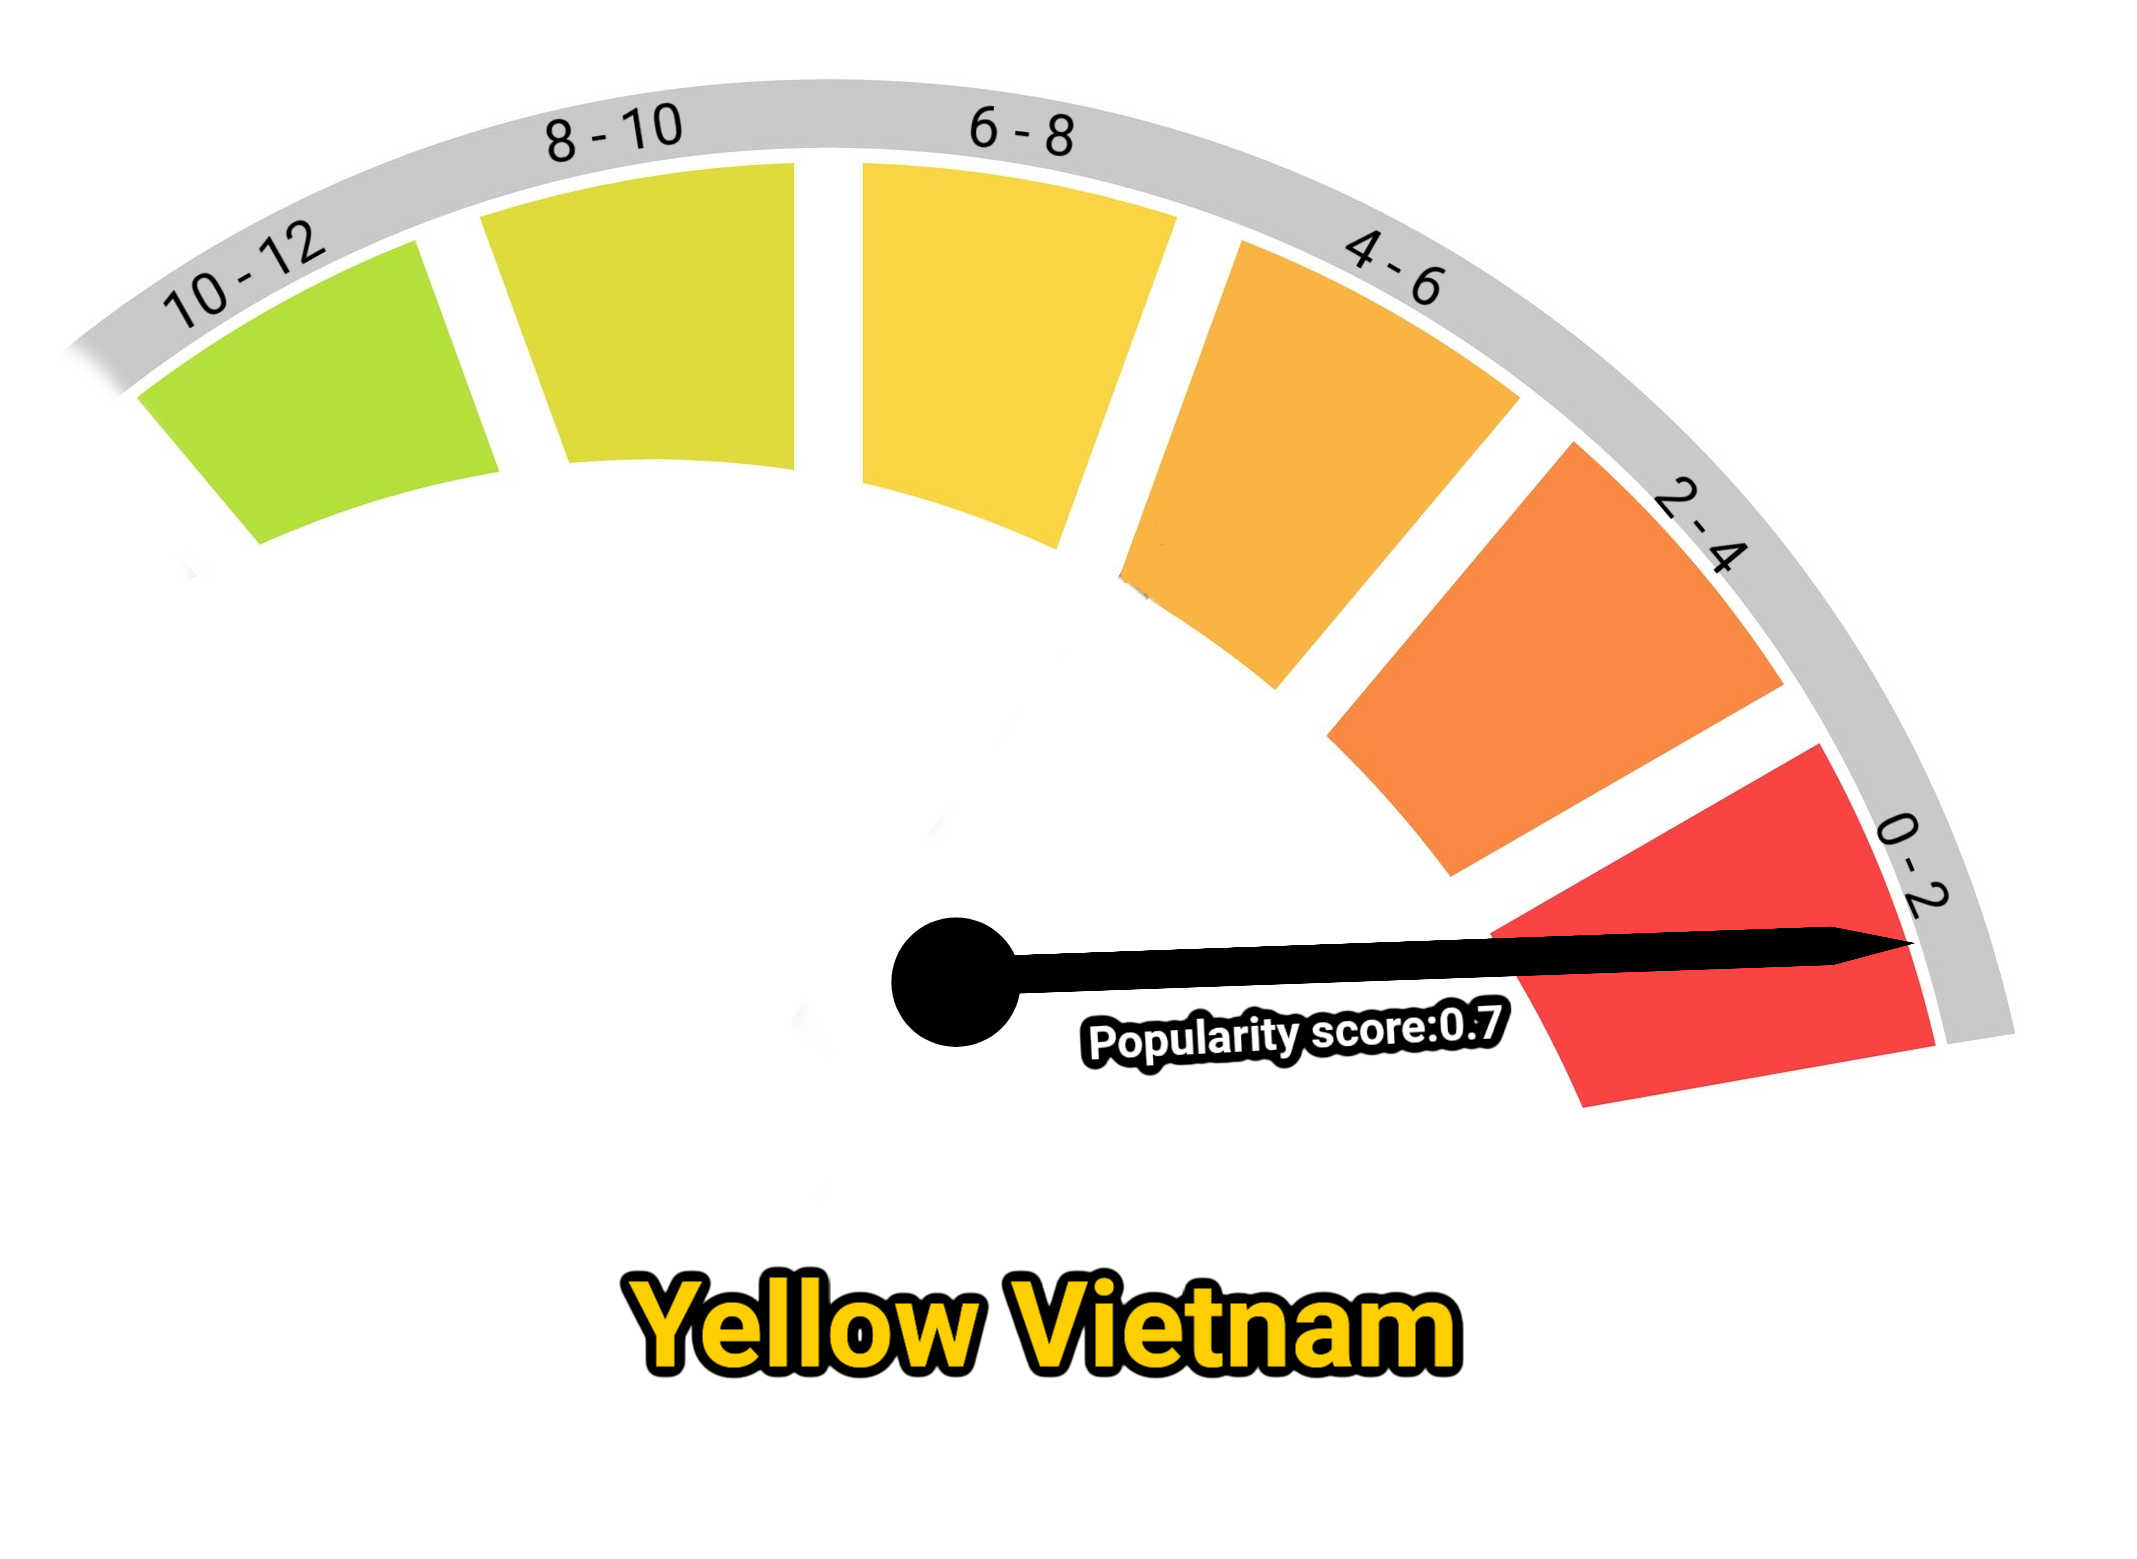 image of yellow vietnam kratom popularity score